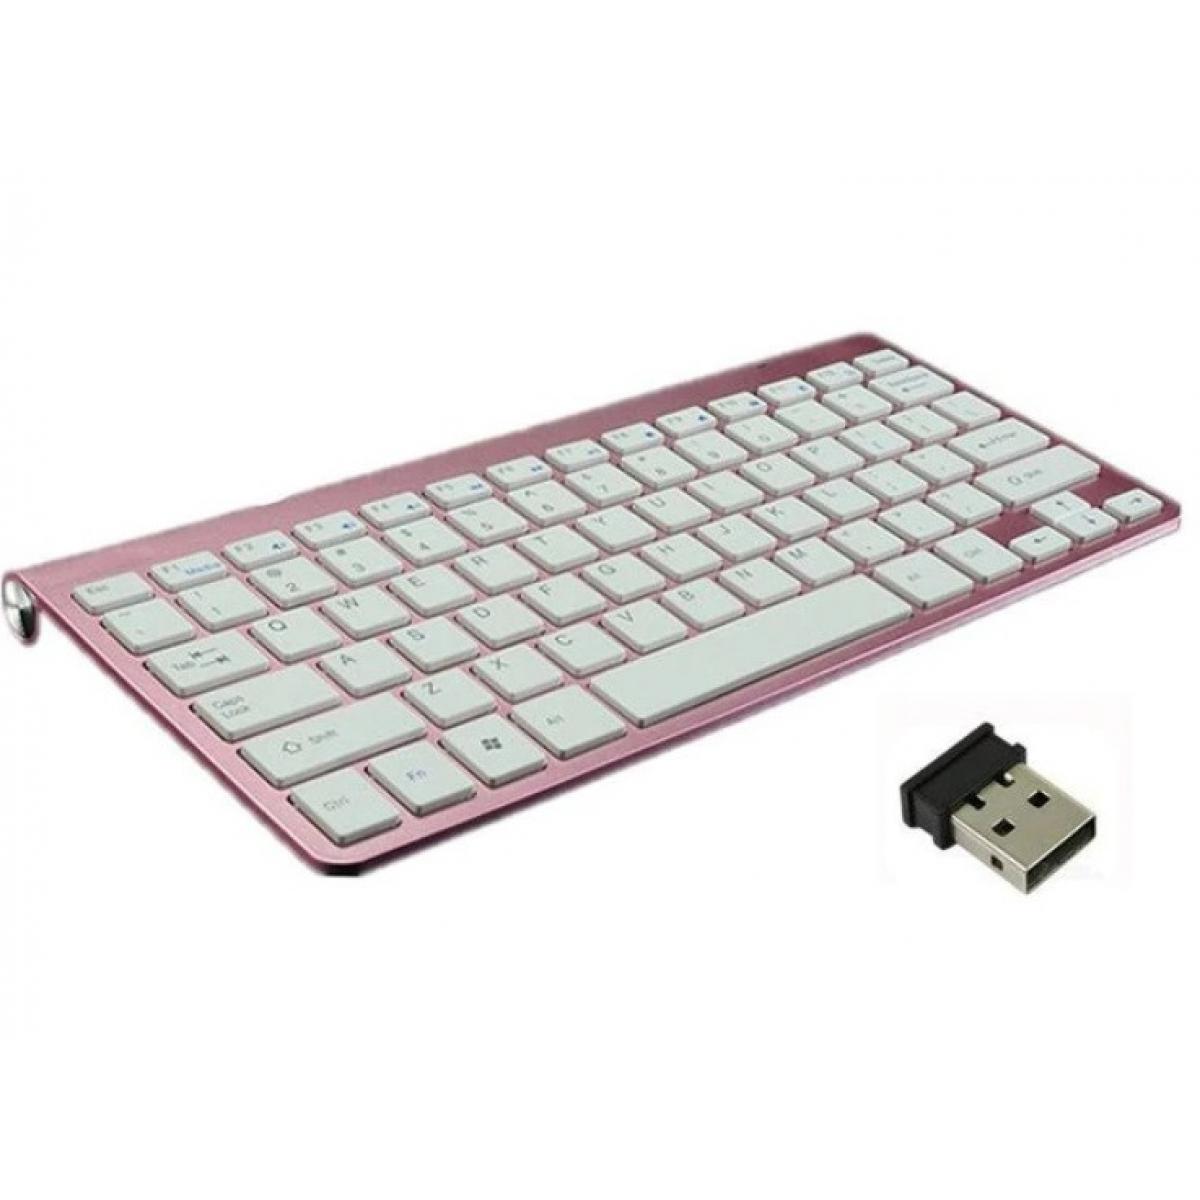 Shot - Clavier Sans Fil Metal pour PC COMPAQ  USB QWERTY Piles (ROSE) - Clavier